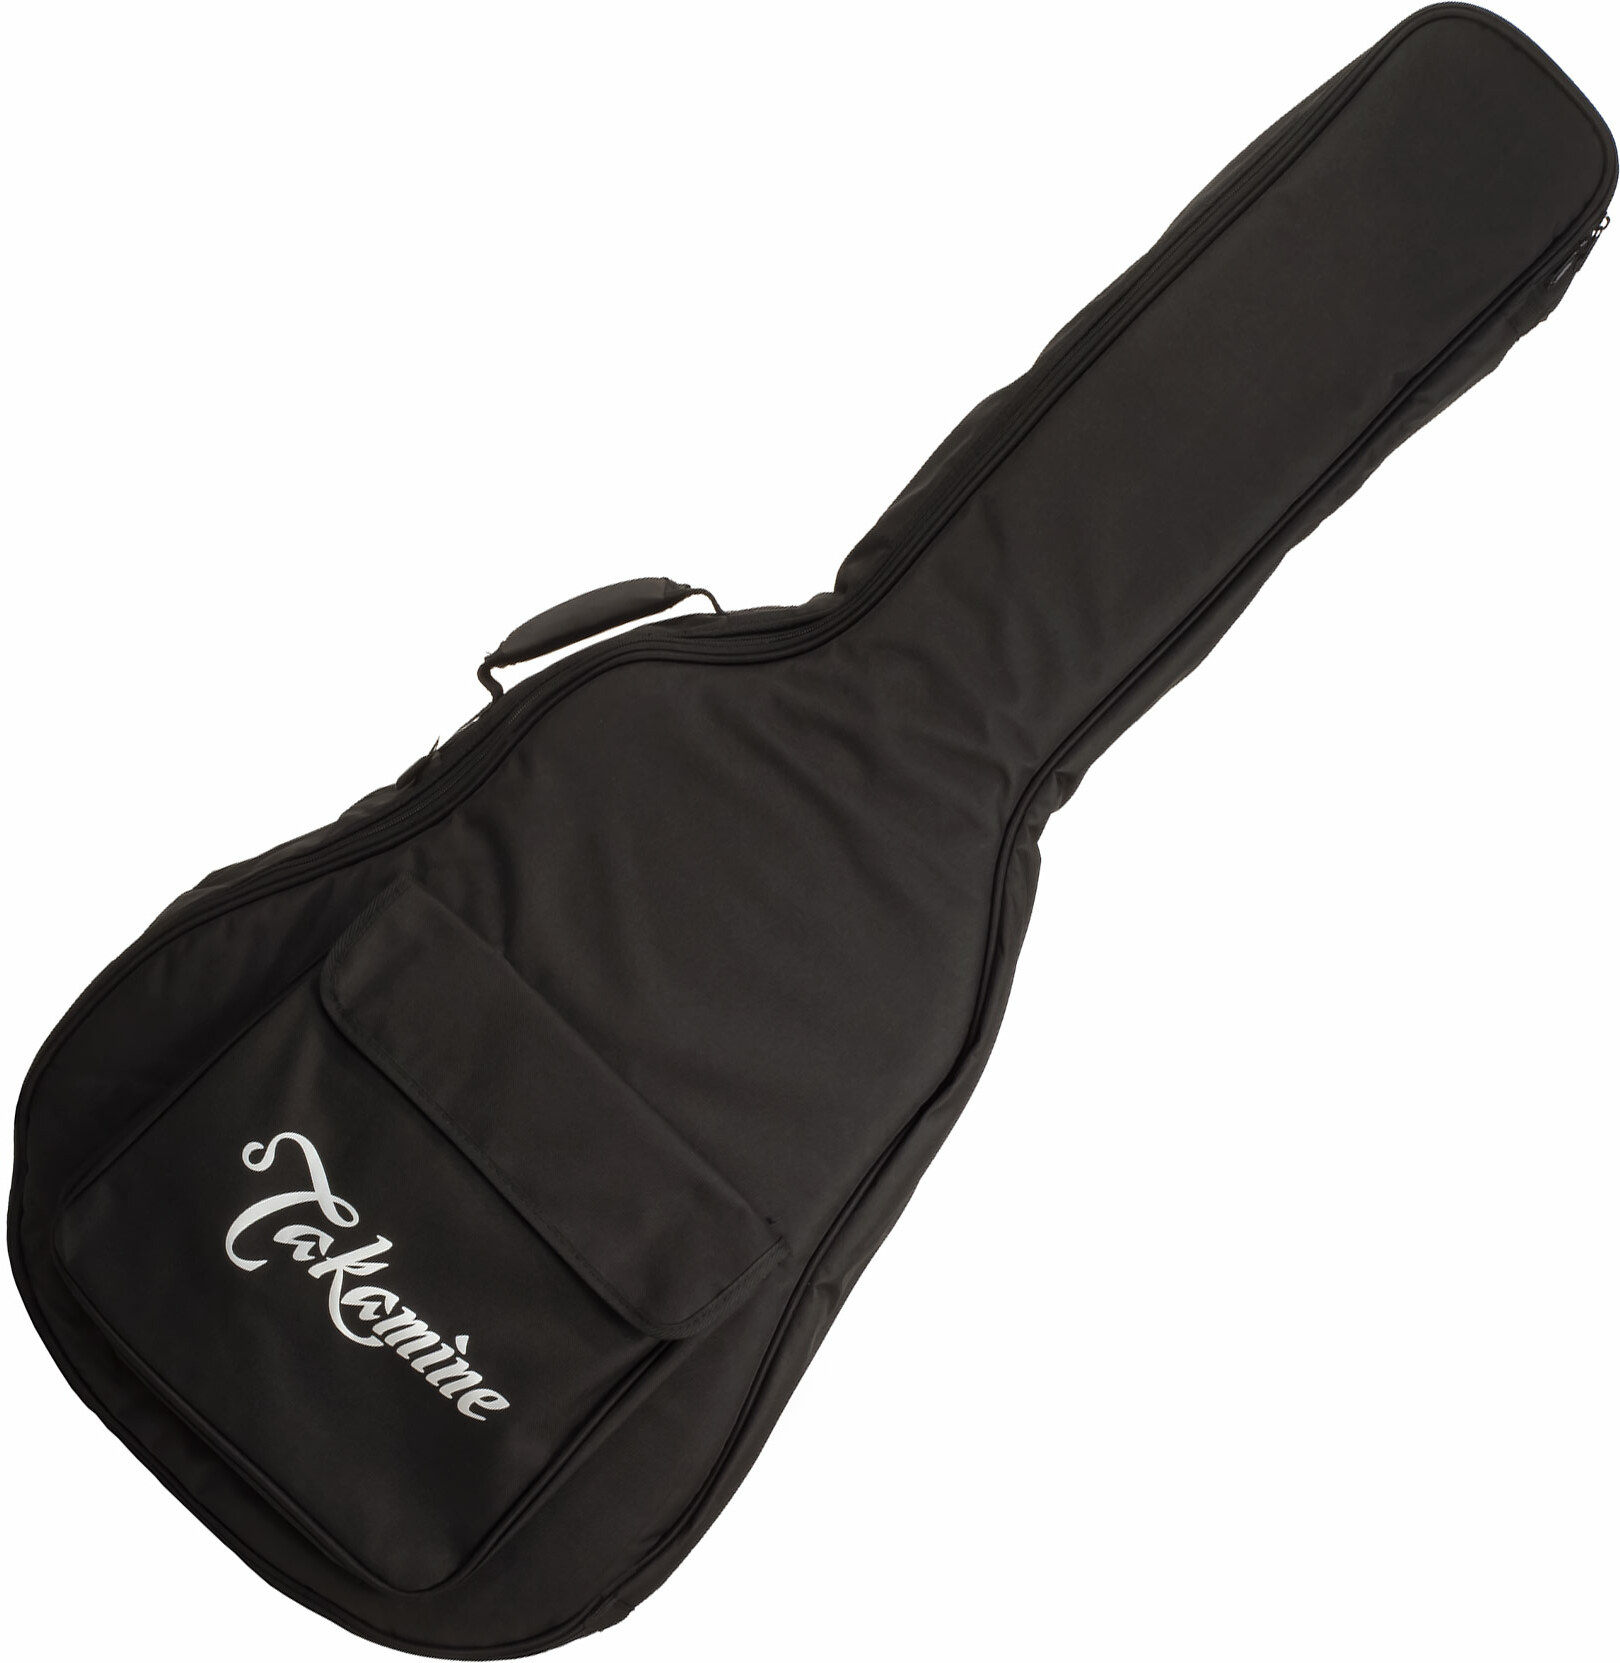 Takamine Gb-s Concert Acoustic Guitar Bag - Bolsa para guitarra acústica - Main picture